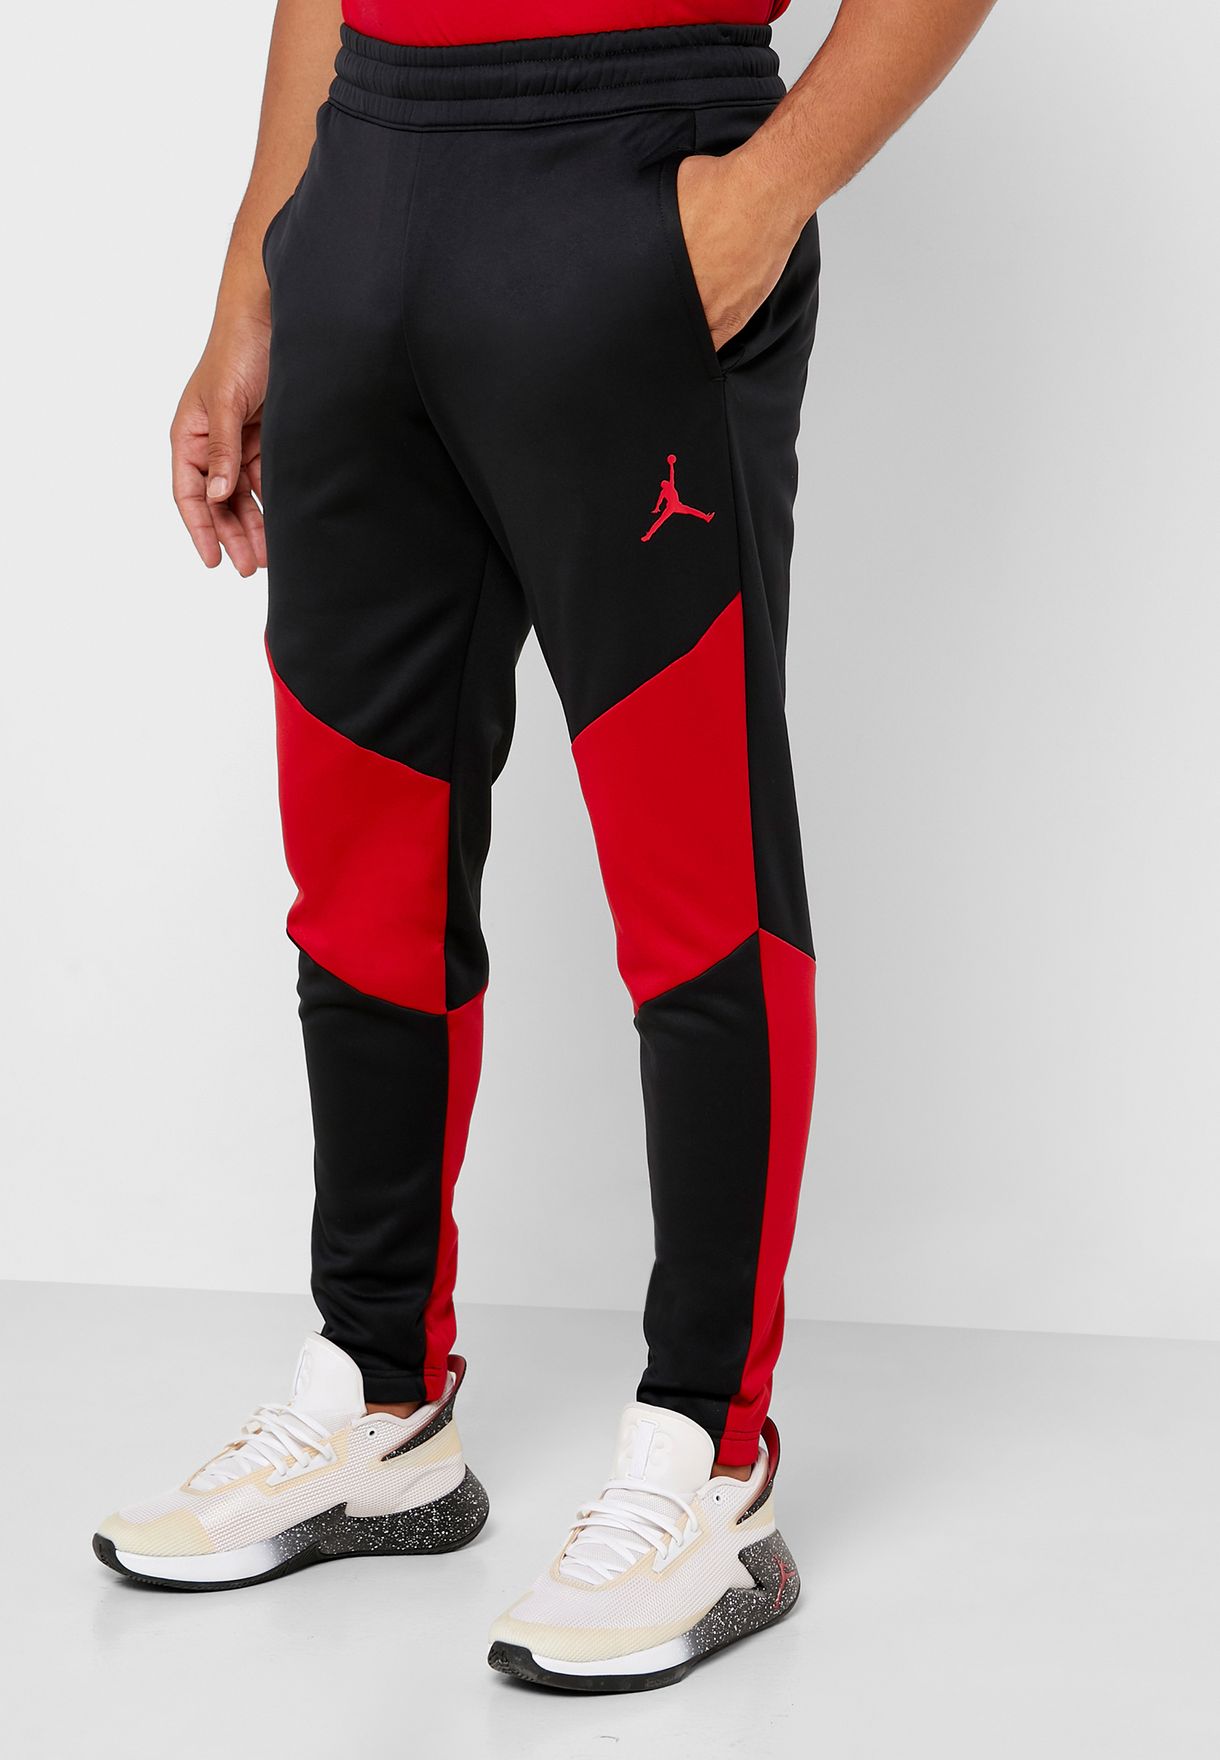 red and black jordan sweatpants for 